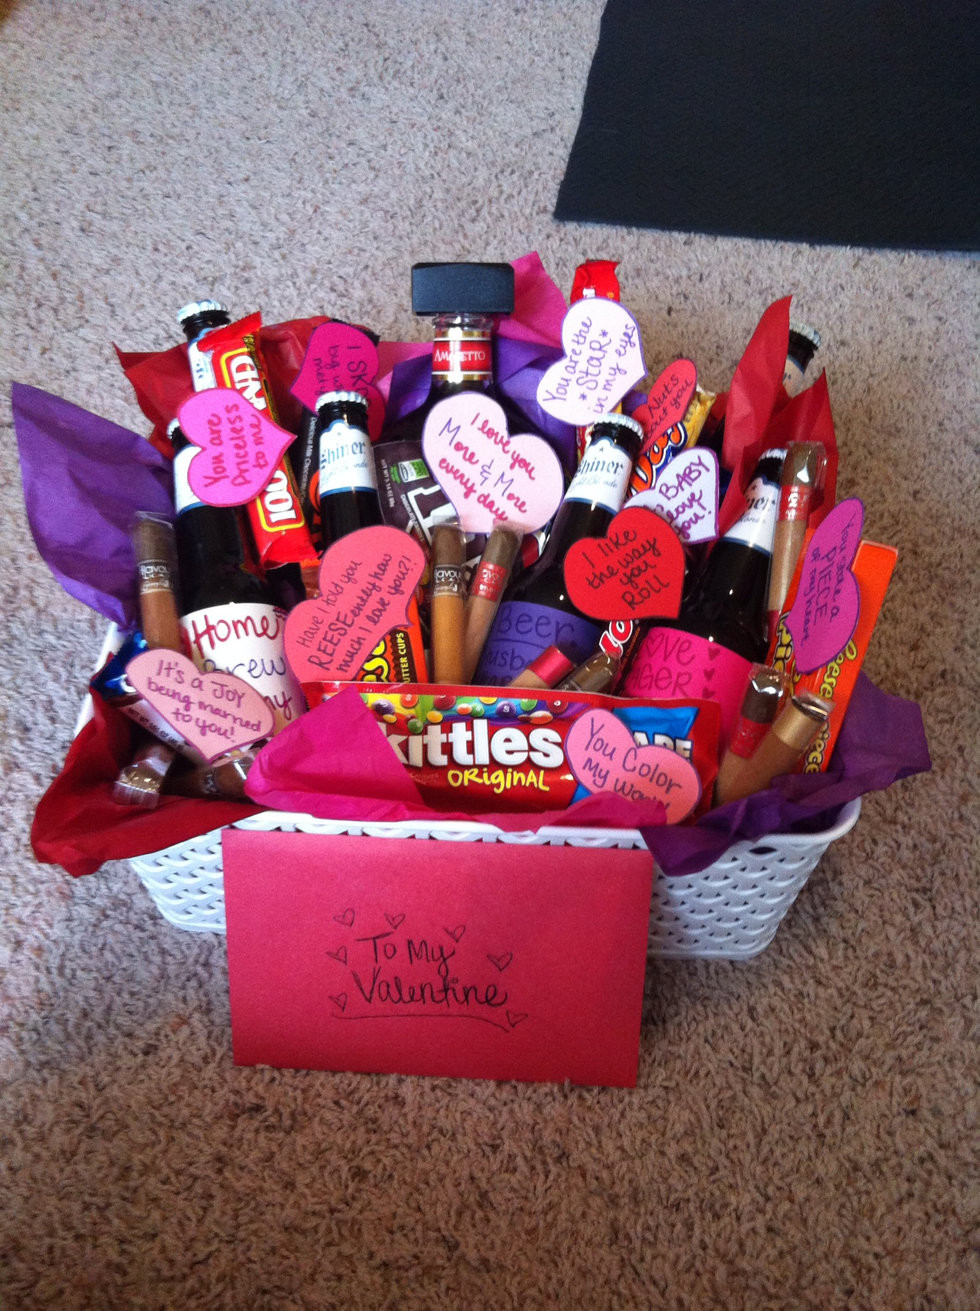 Valentines gift ideas for boyfriend